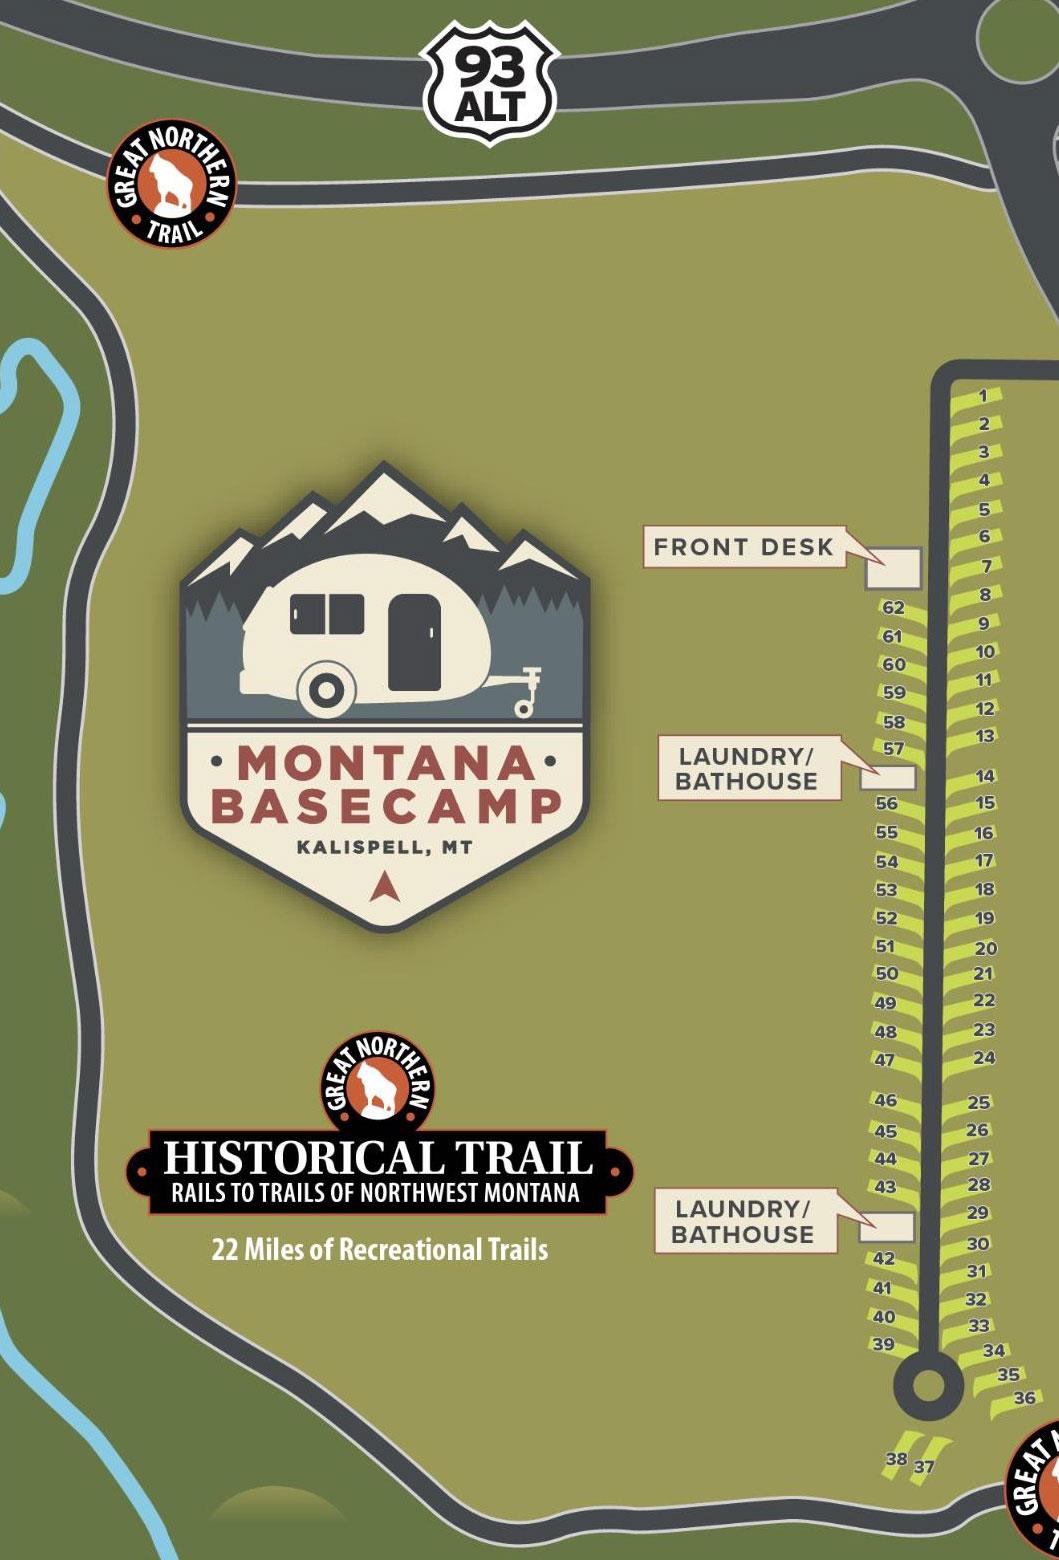 Montana Basecamp Site Plan